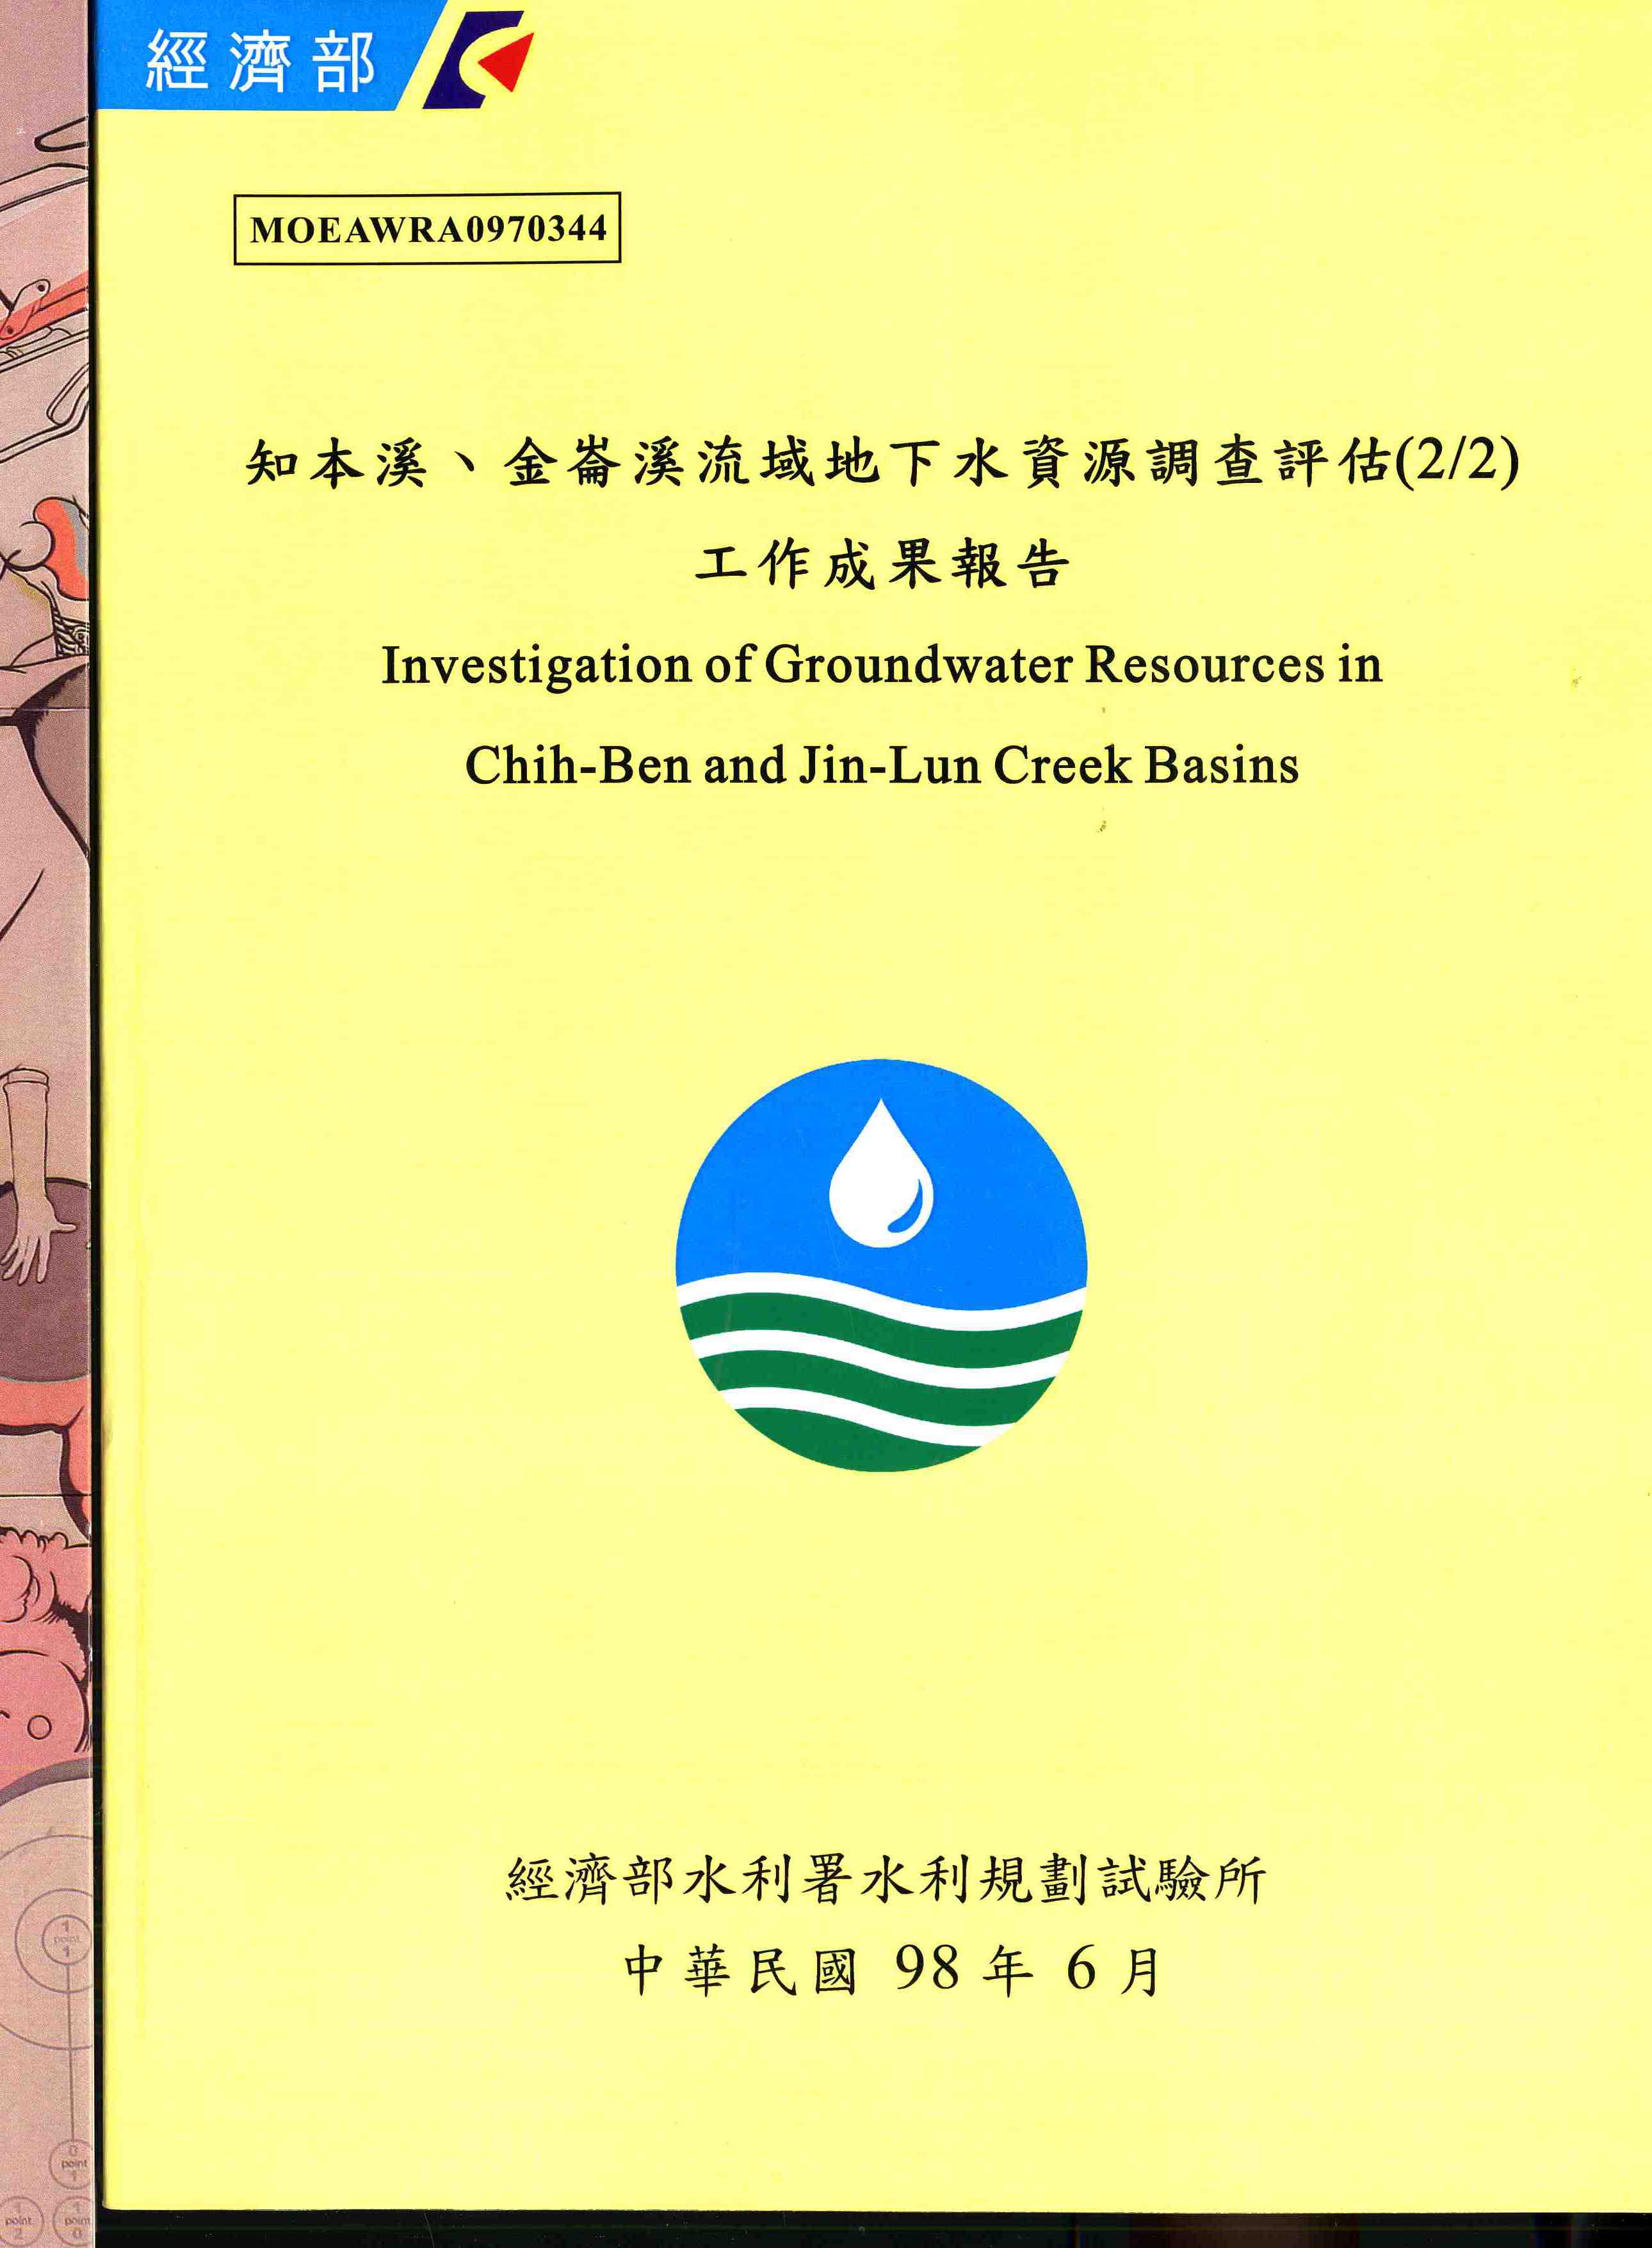 知本溪、金崙溪流域地下水資源調查評估(2/2)工作成果報告